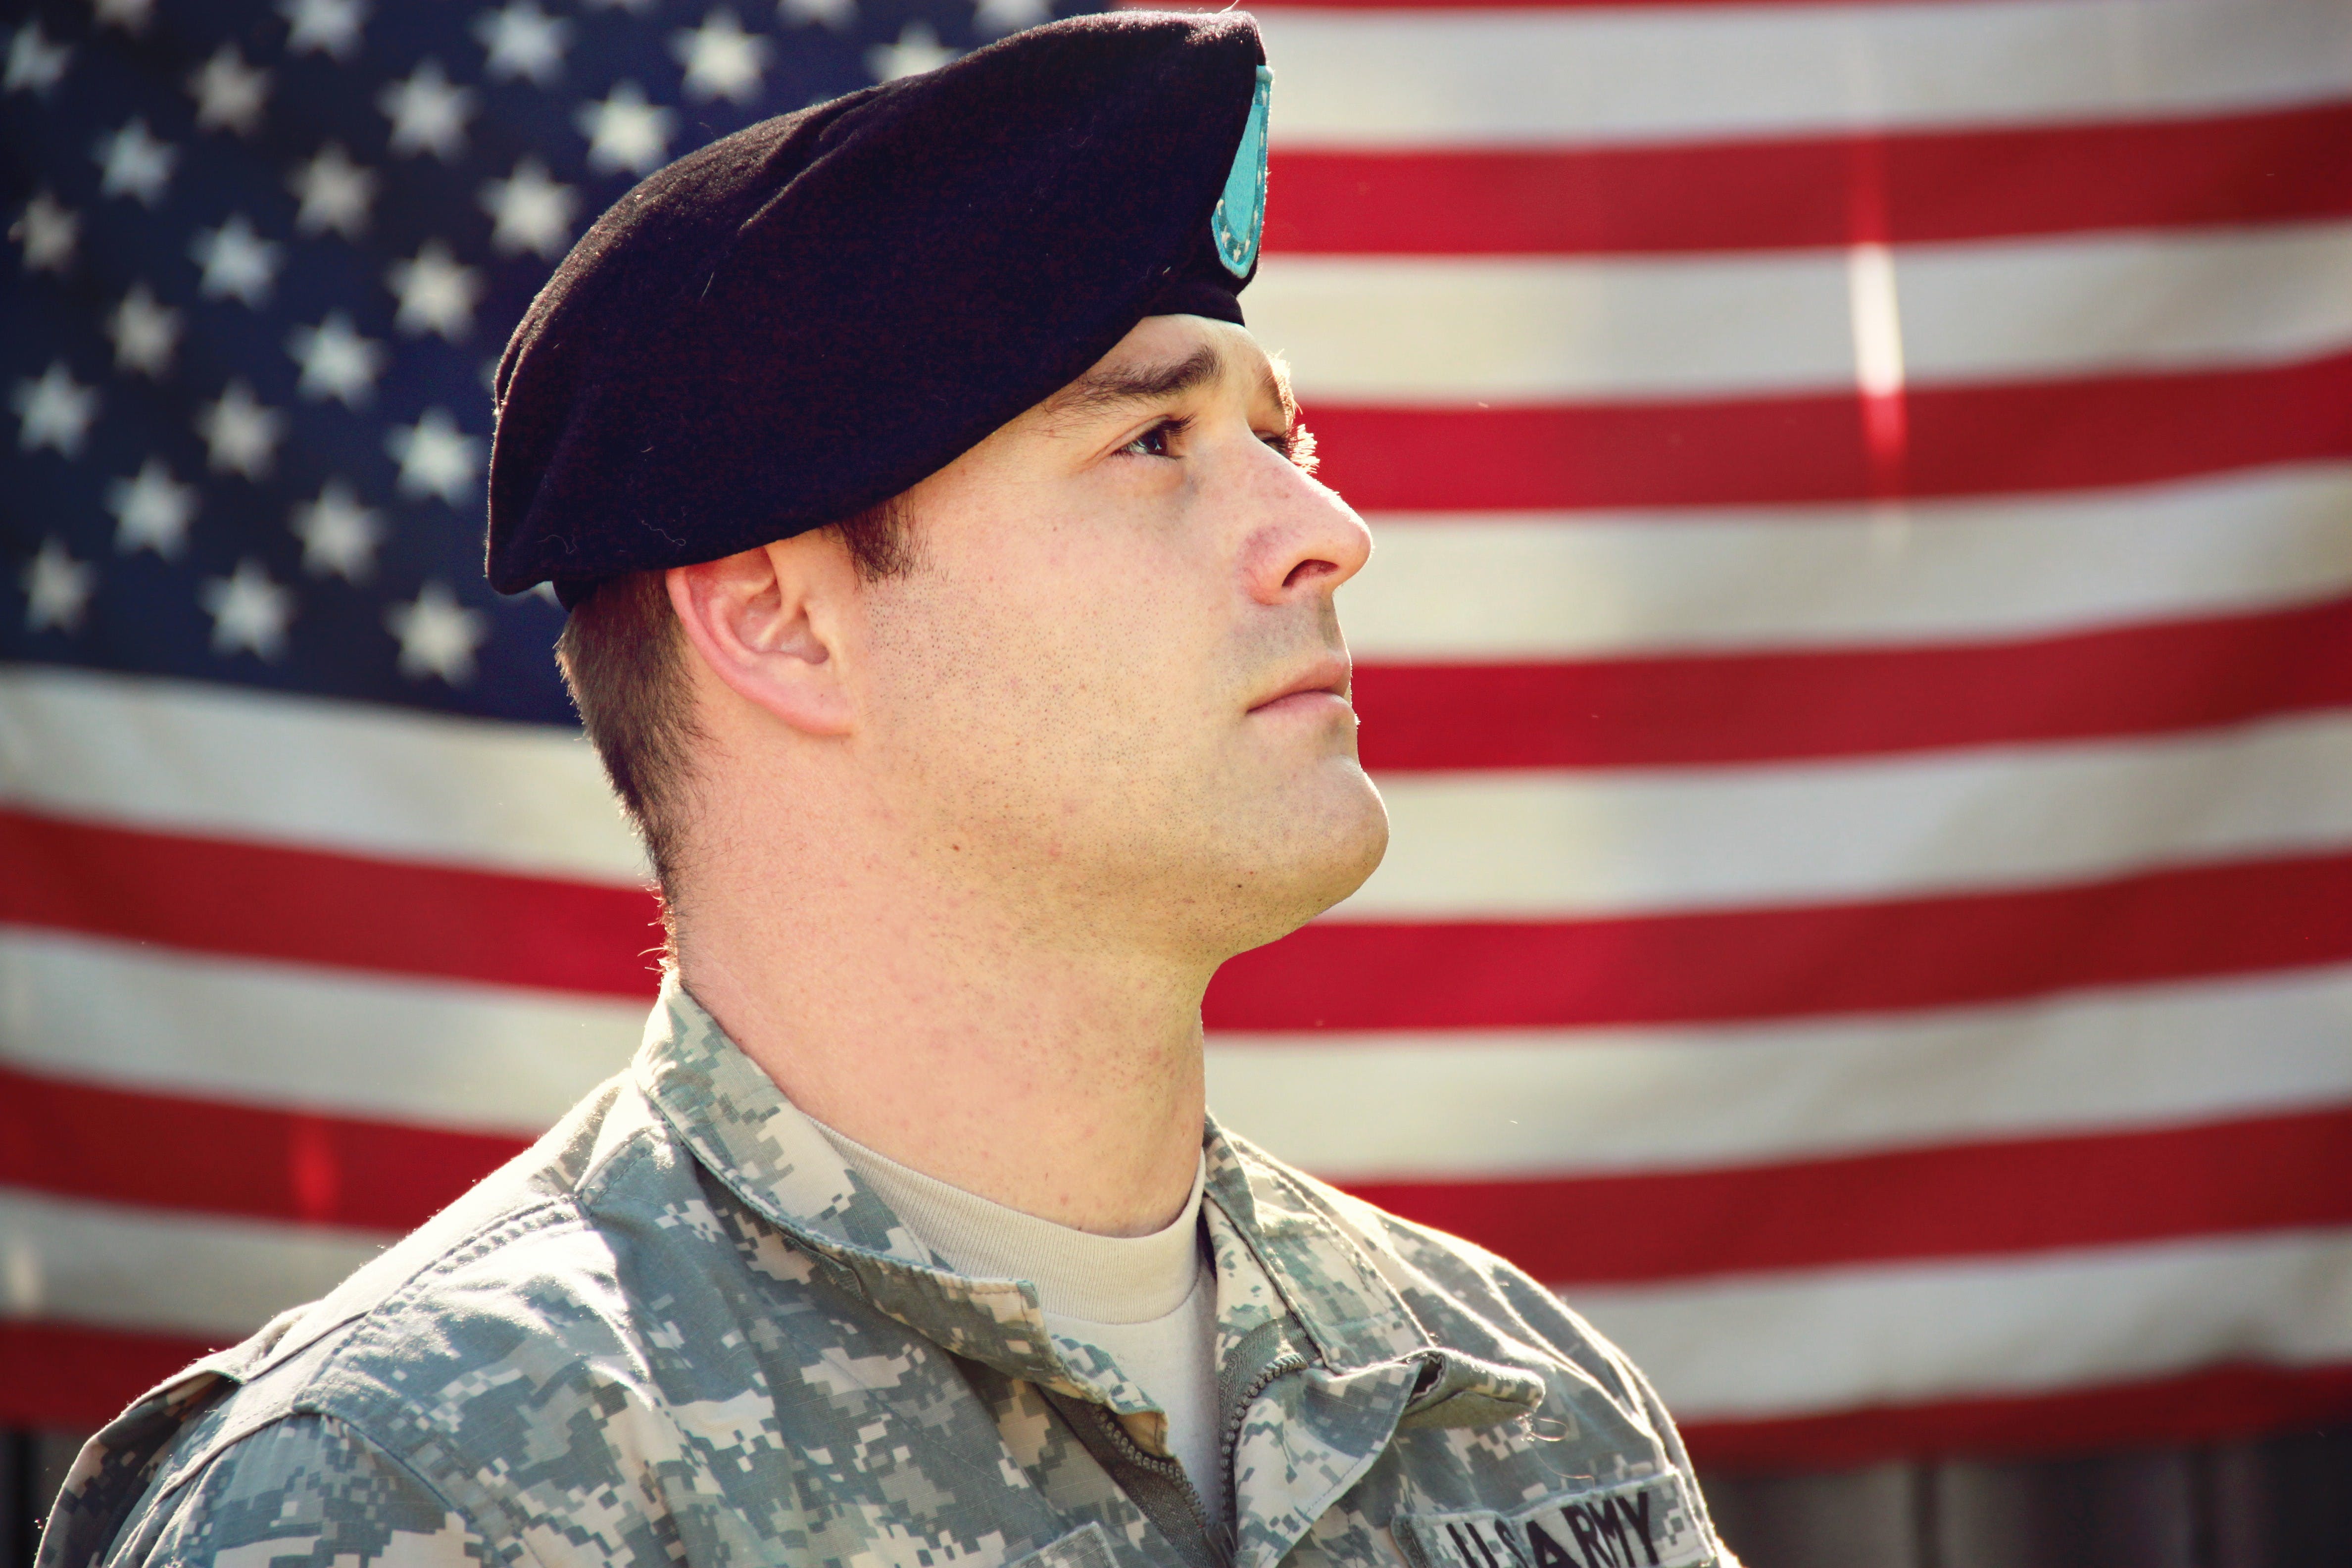 Un soldat en uniforme avec le drapeau américain derrière lui | Source : Pexels